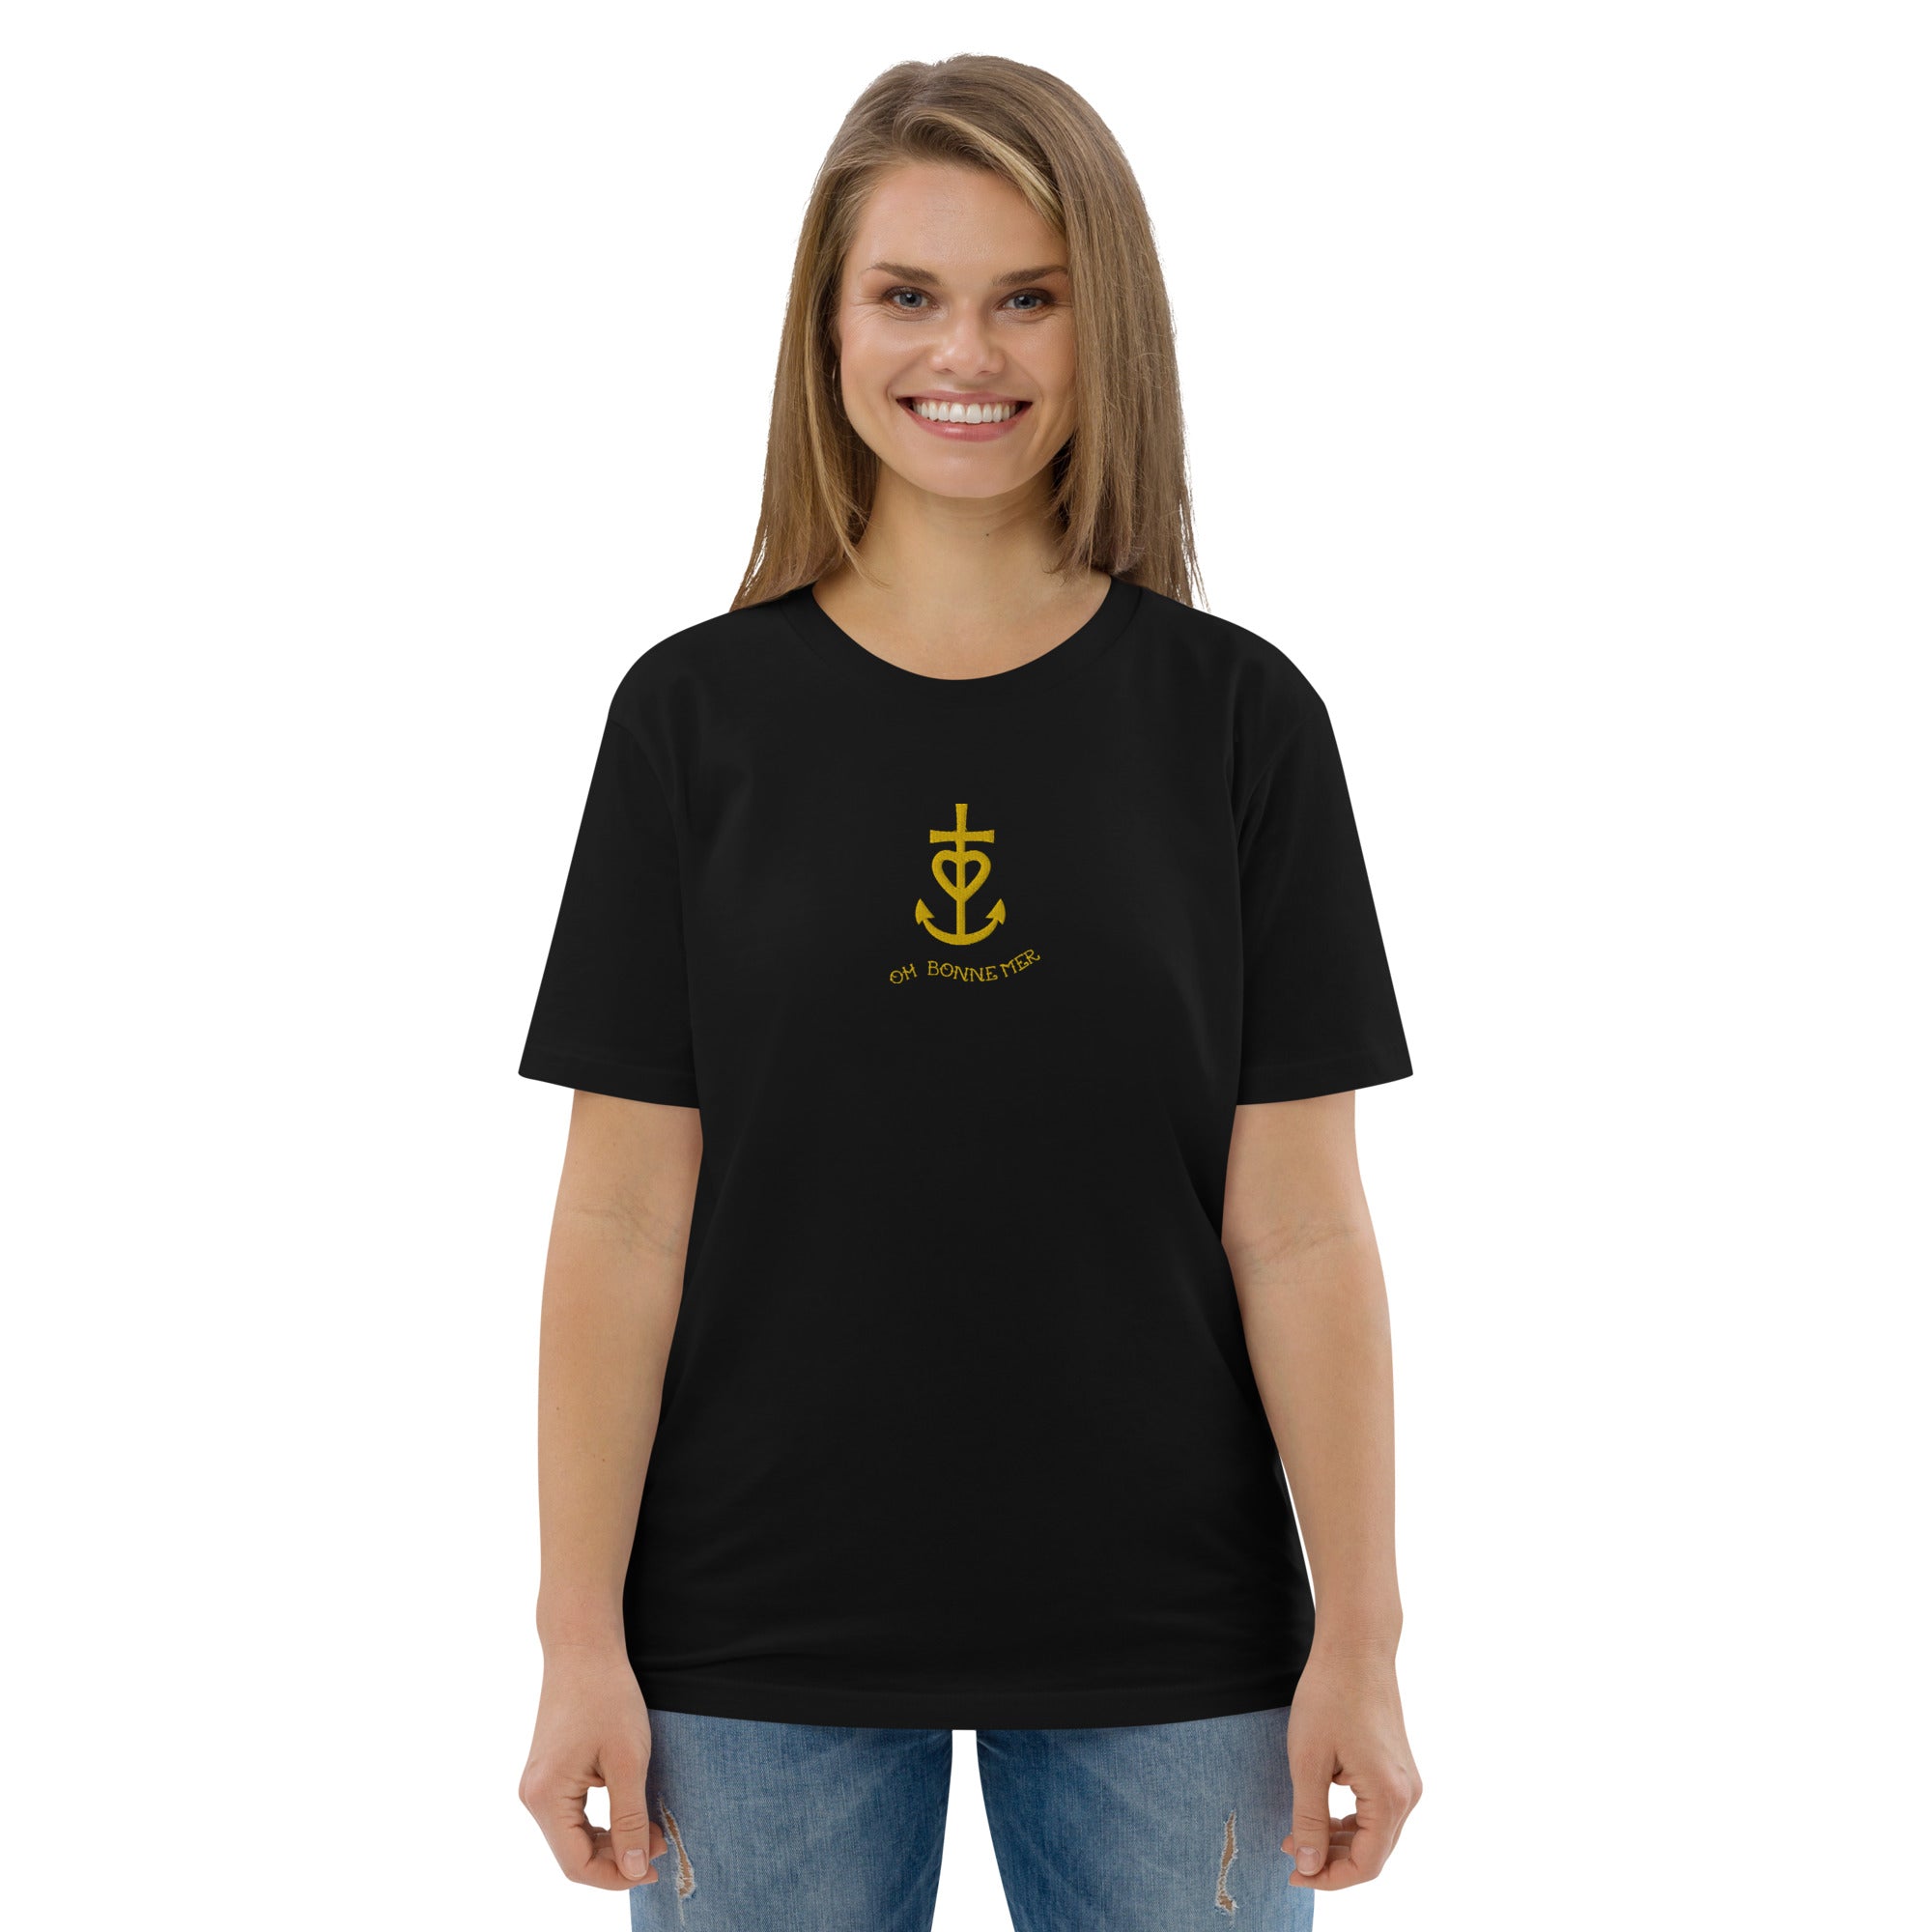 T-shirt unisexe en coton biologique Croix de Camargue dorée Oh Bonne mer brodé sur couleurs foncées